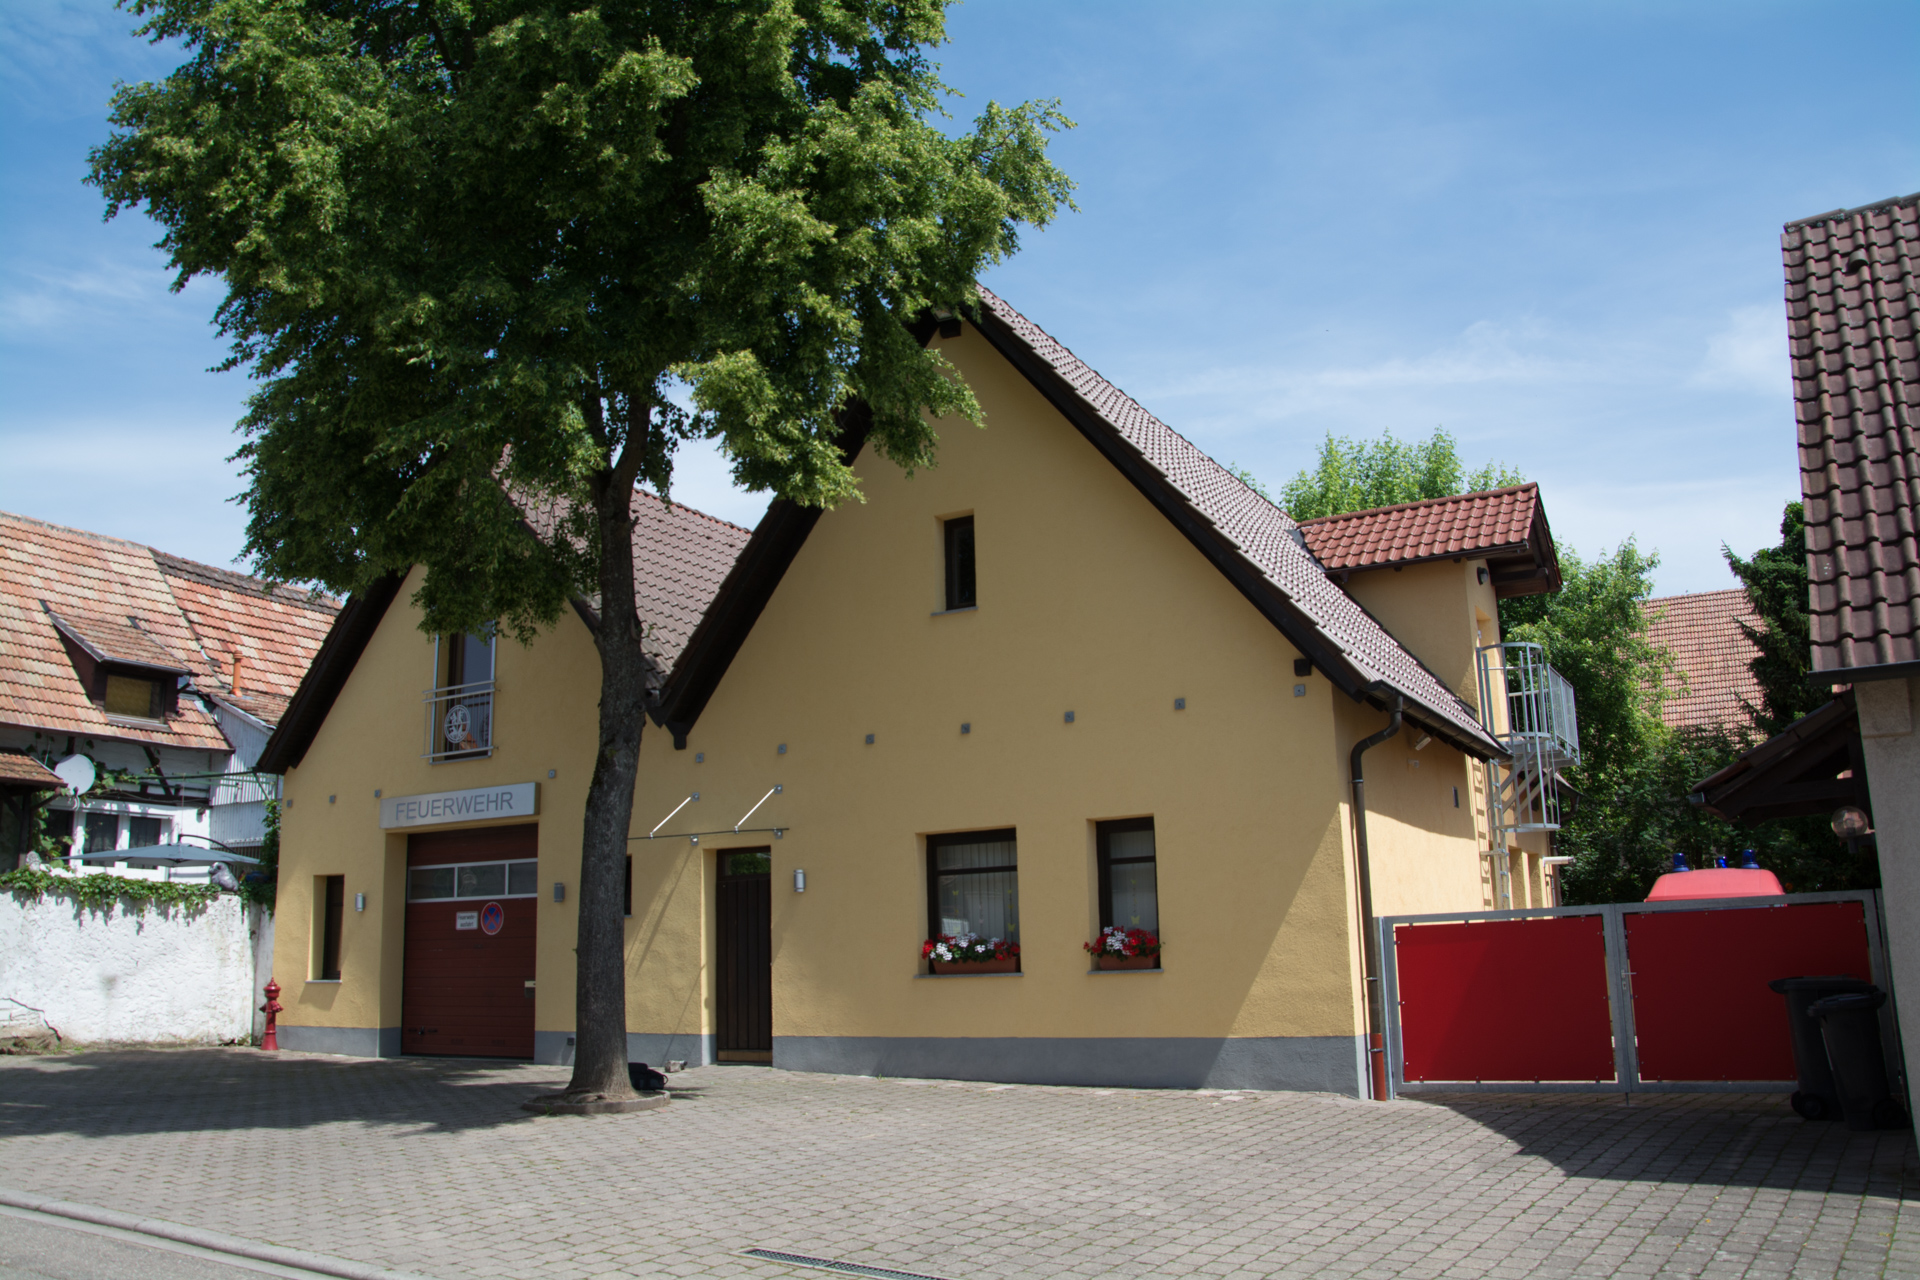 Unser Feuerwehrhaus in der Raiffeisenstraße